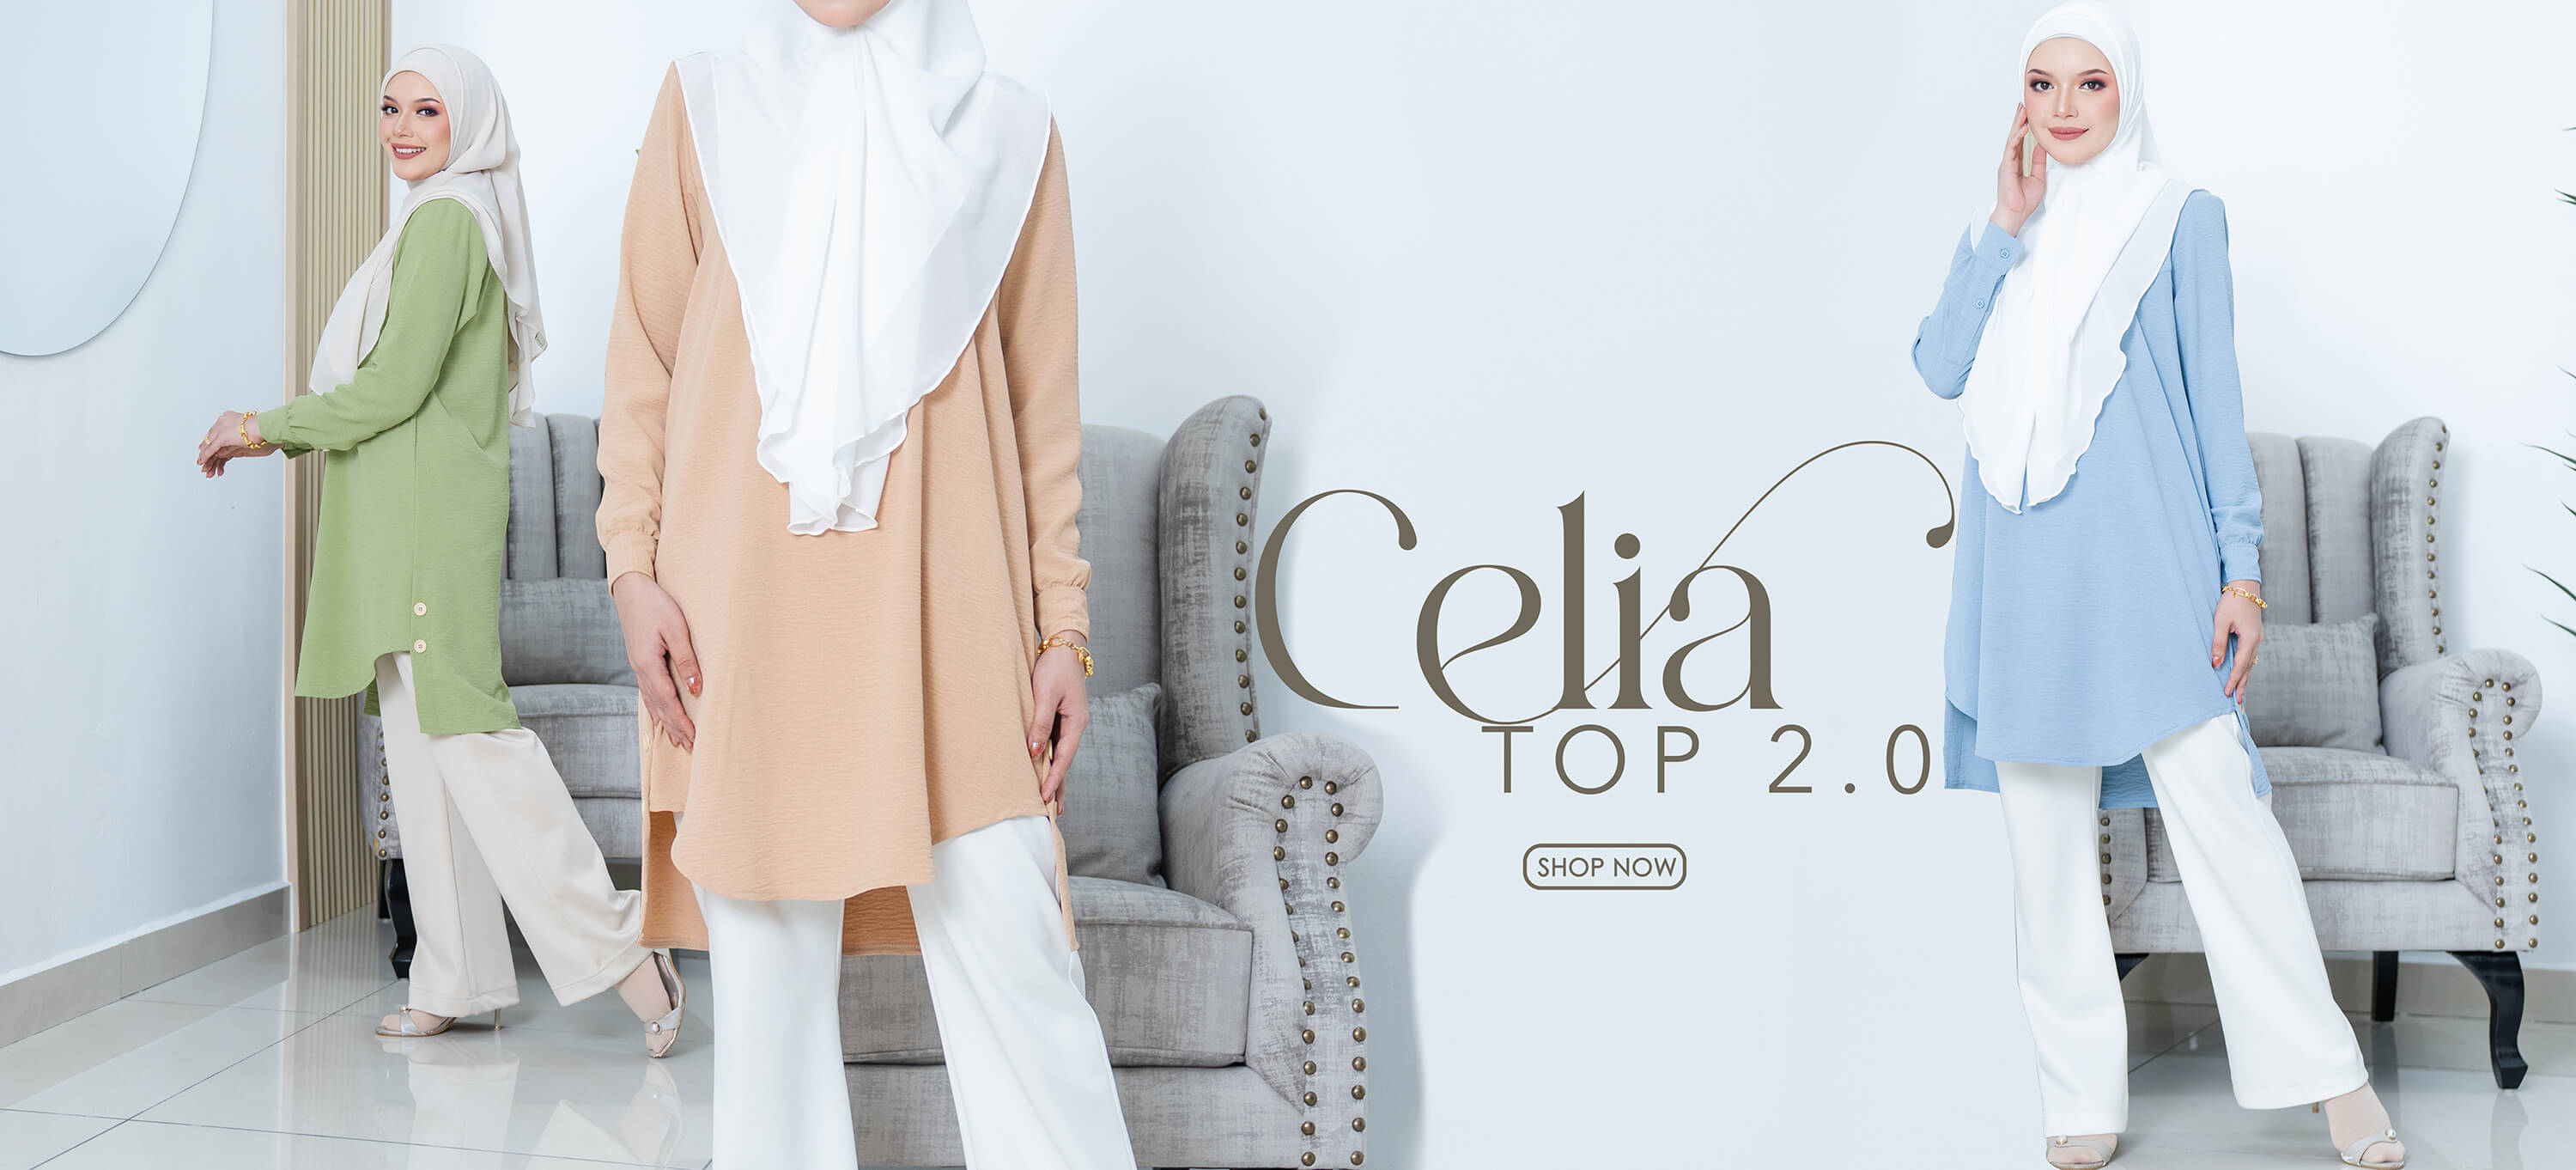 Celia Top 2.0